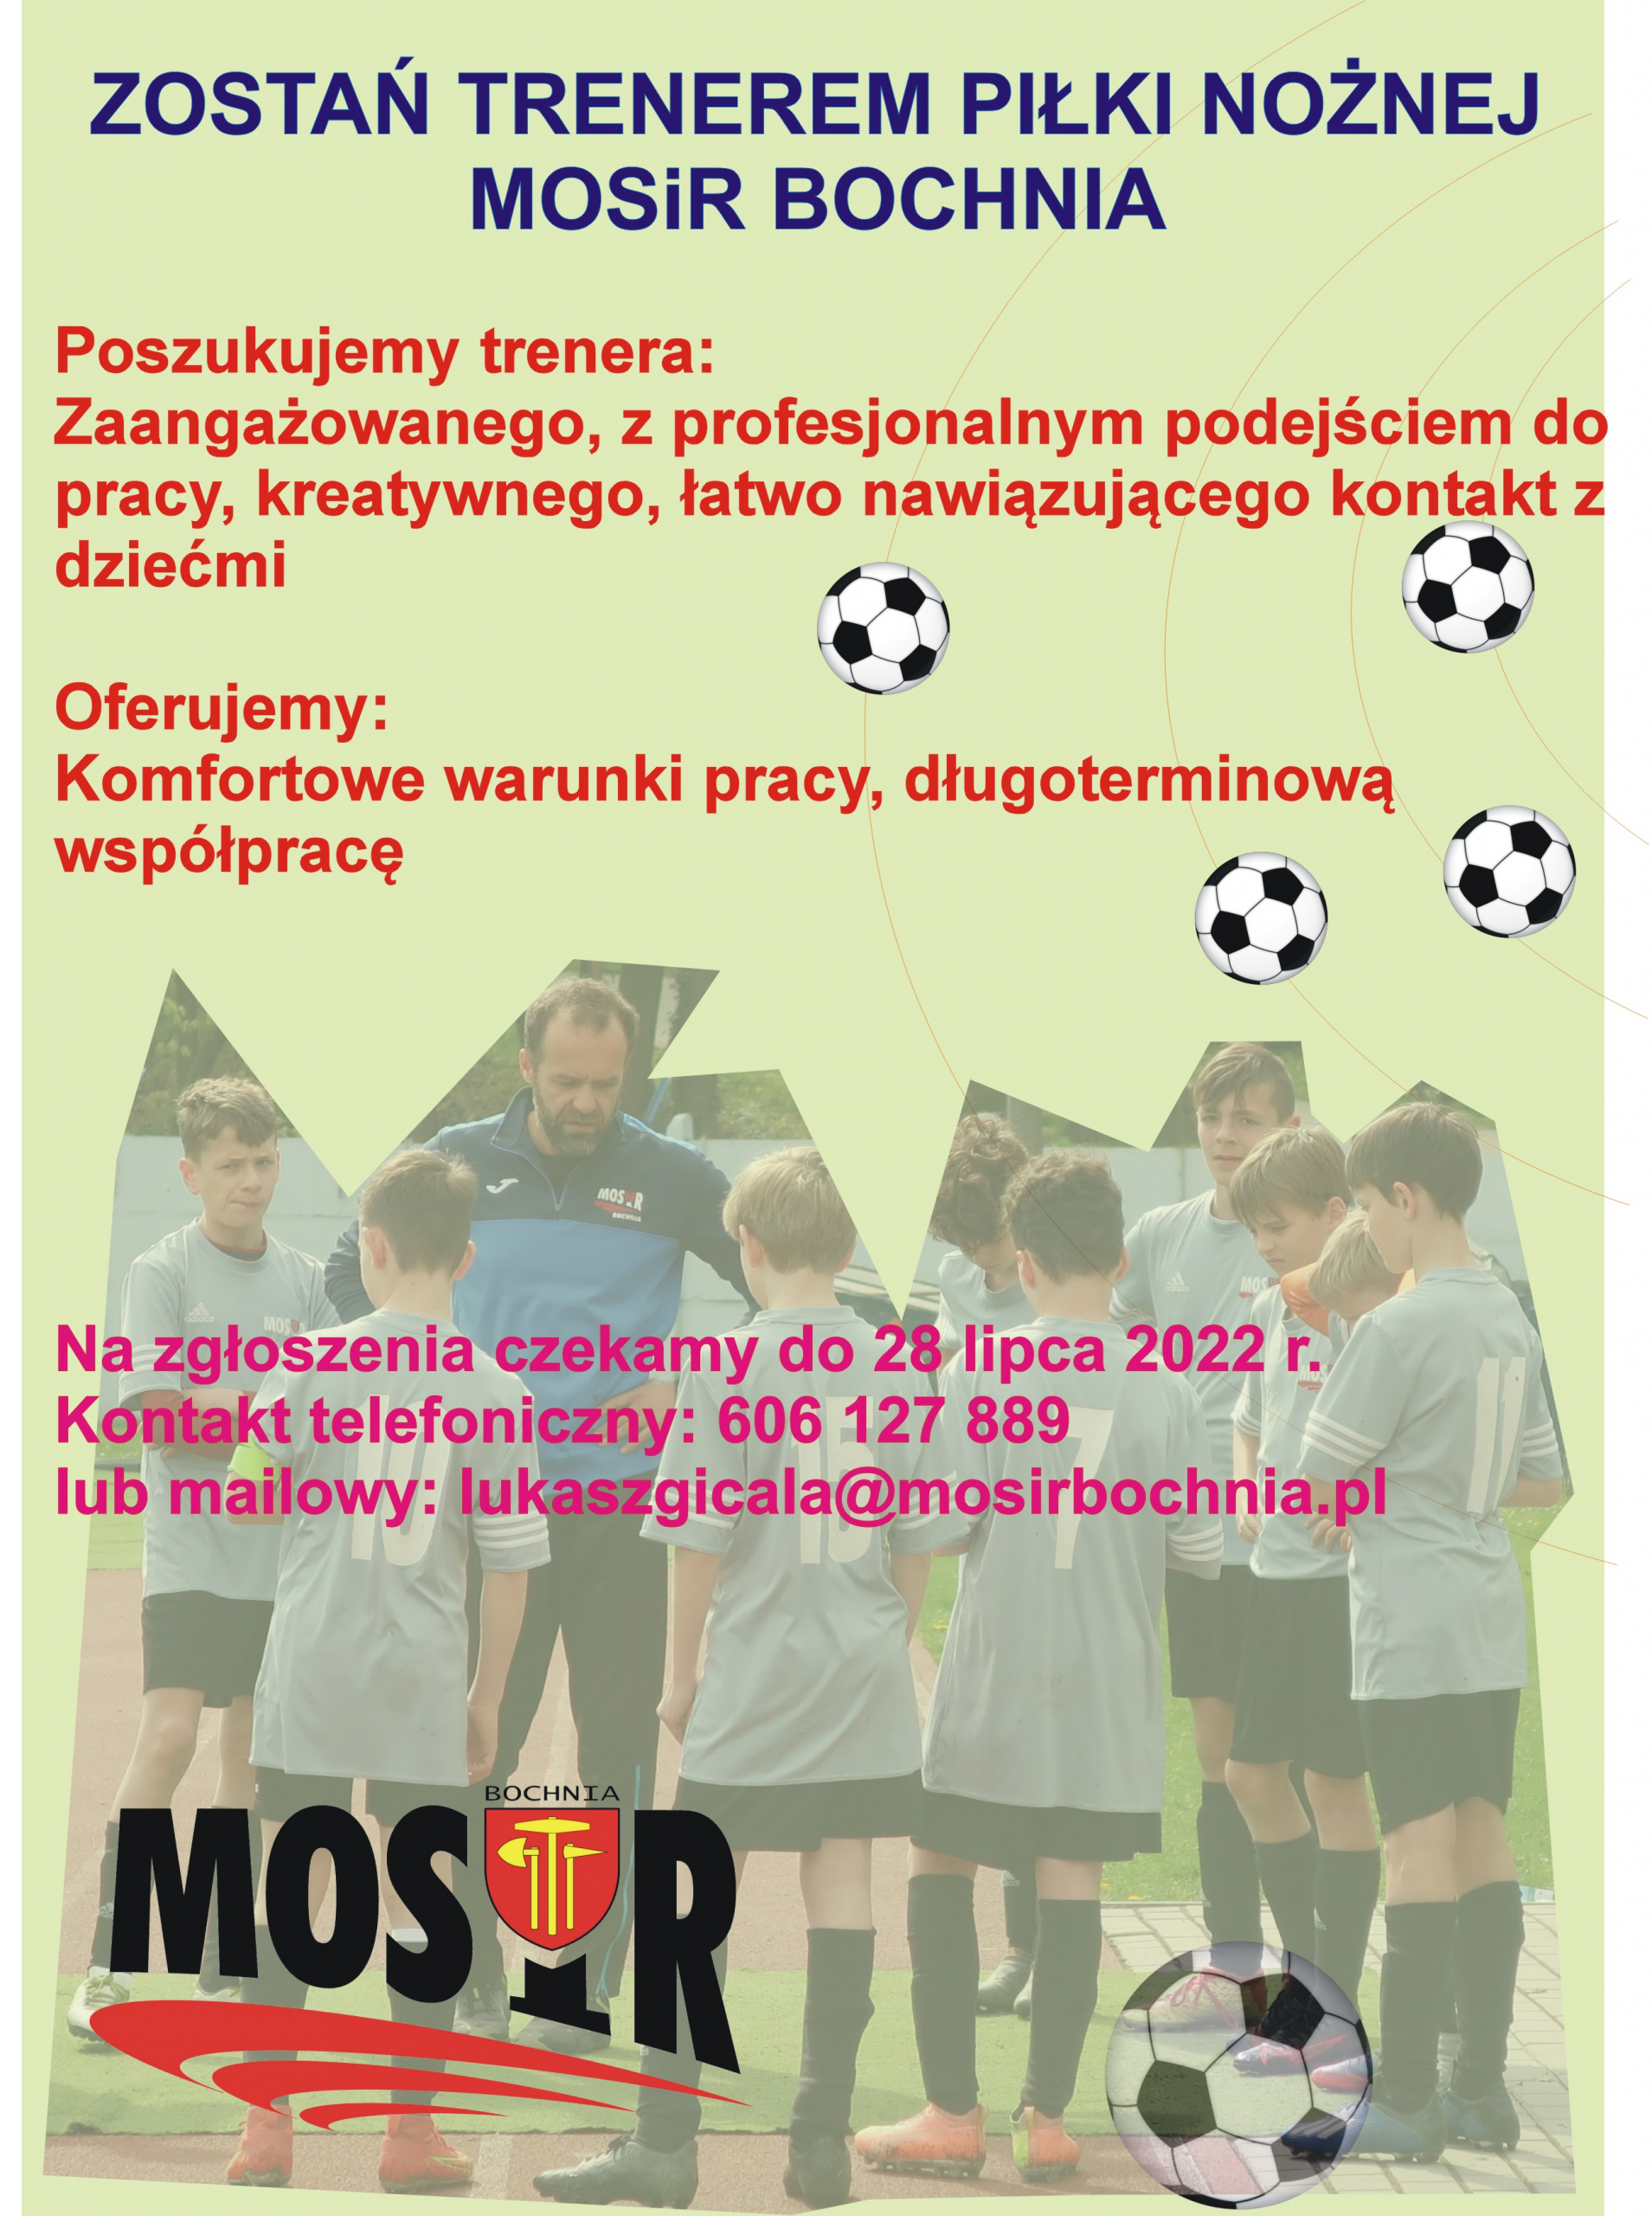 Zostań trenerem piłki nożnej w MOSiR Bochnia